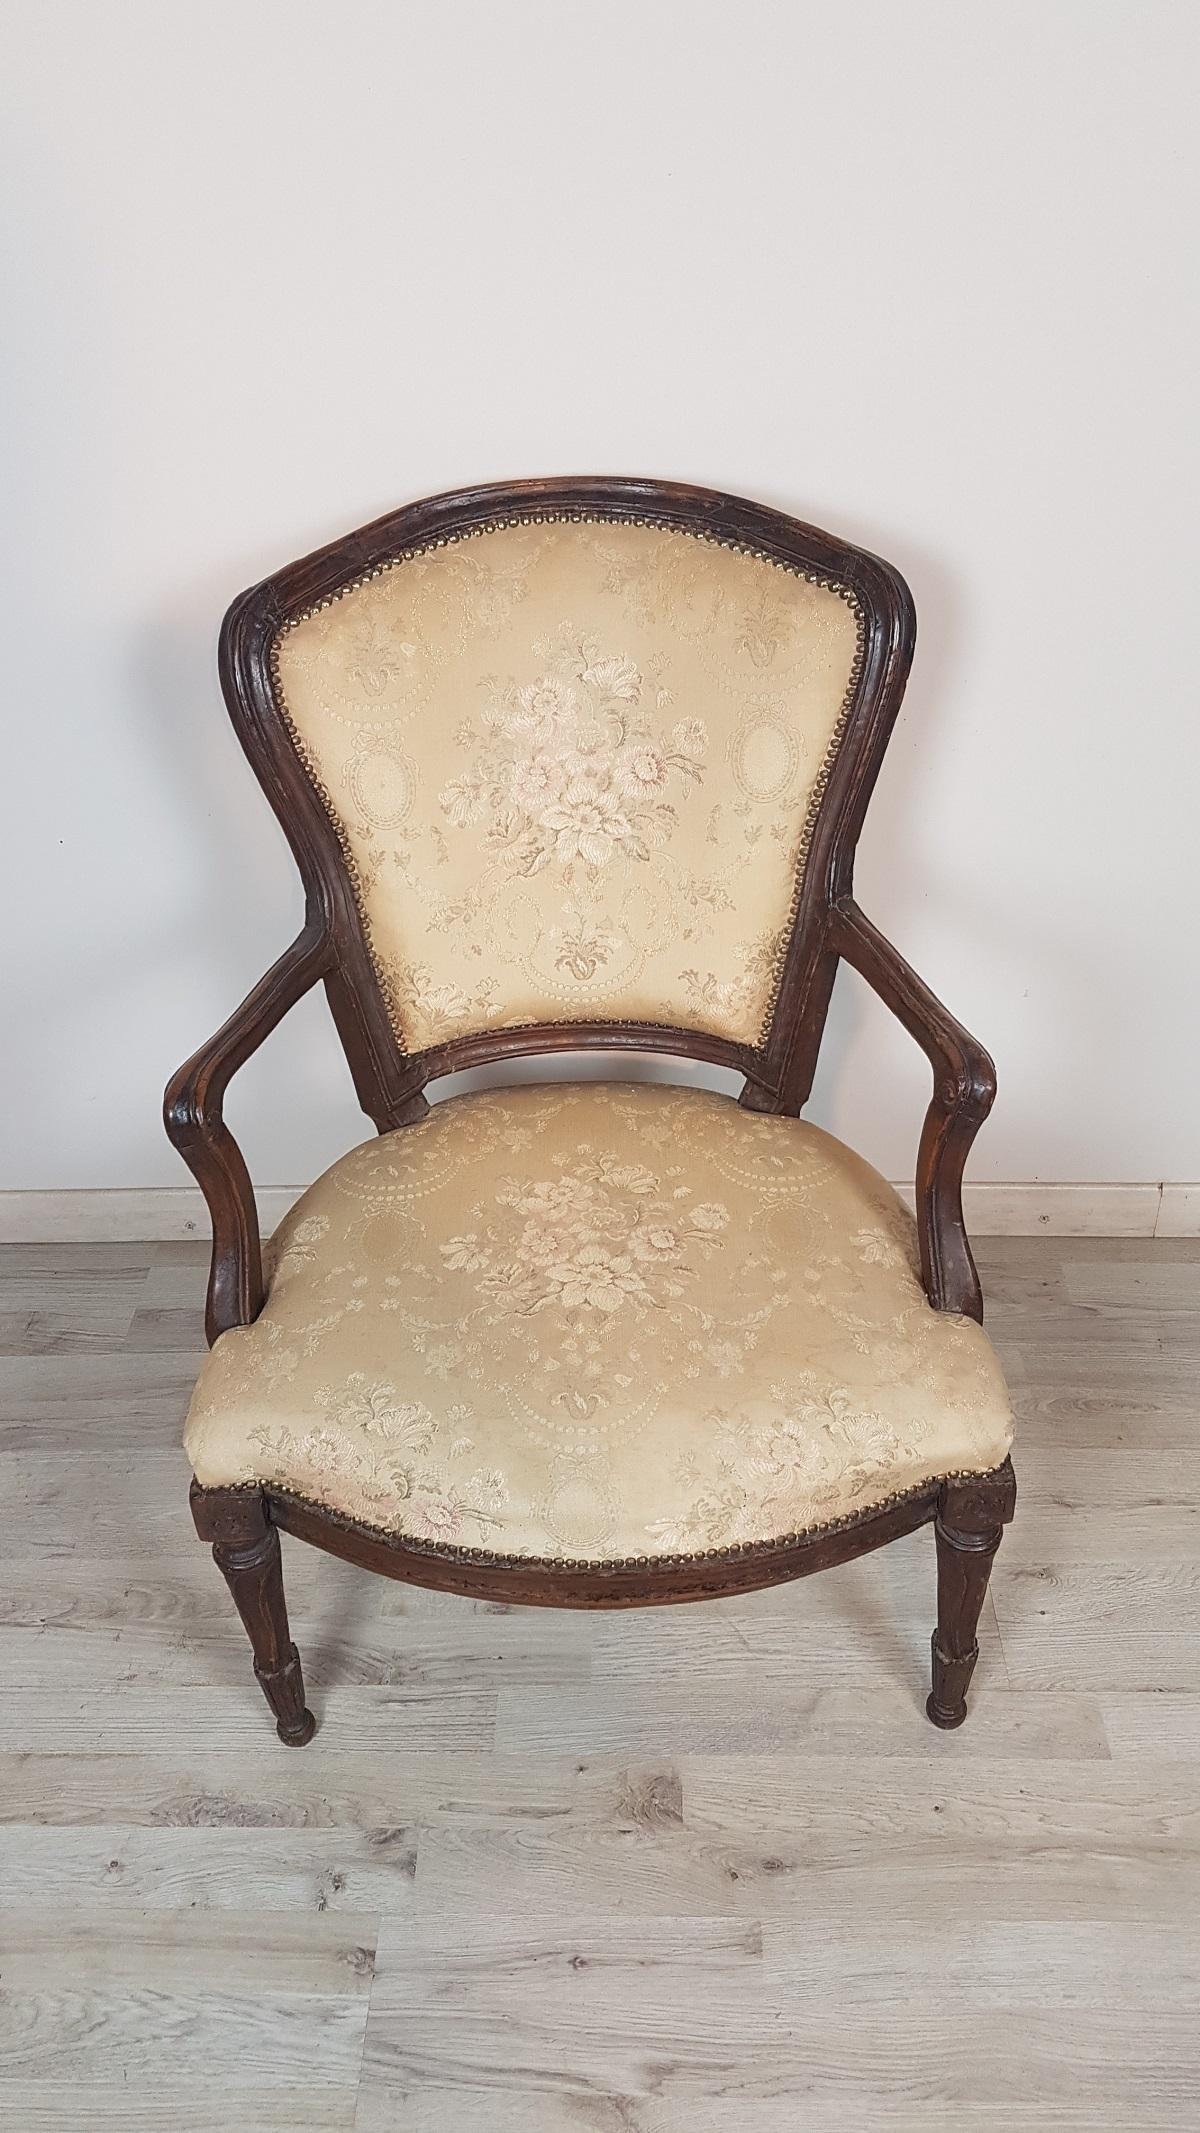 Italienischer antiker Sessel aus der Zeit Ludwigs XVI. Die Form des Stuhls ist sehr geradlinig mit geraden Beinen im perfekten Louis-XVI-Stil. Breiter und bequemer Sitz. Schöner Sessel ideal in Ihrem Wohnzimmer oder für einen Schreibtisch.
  